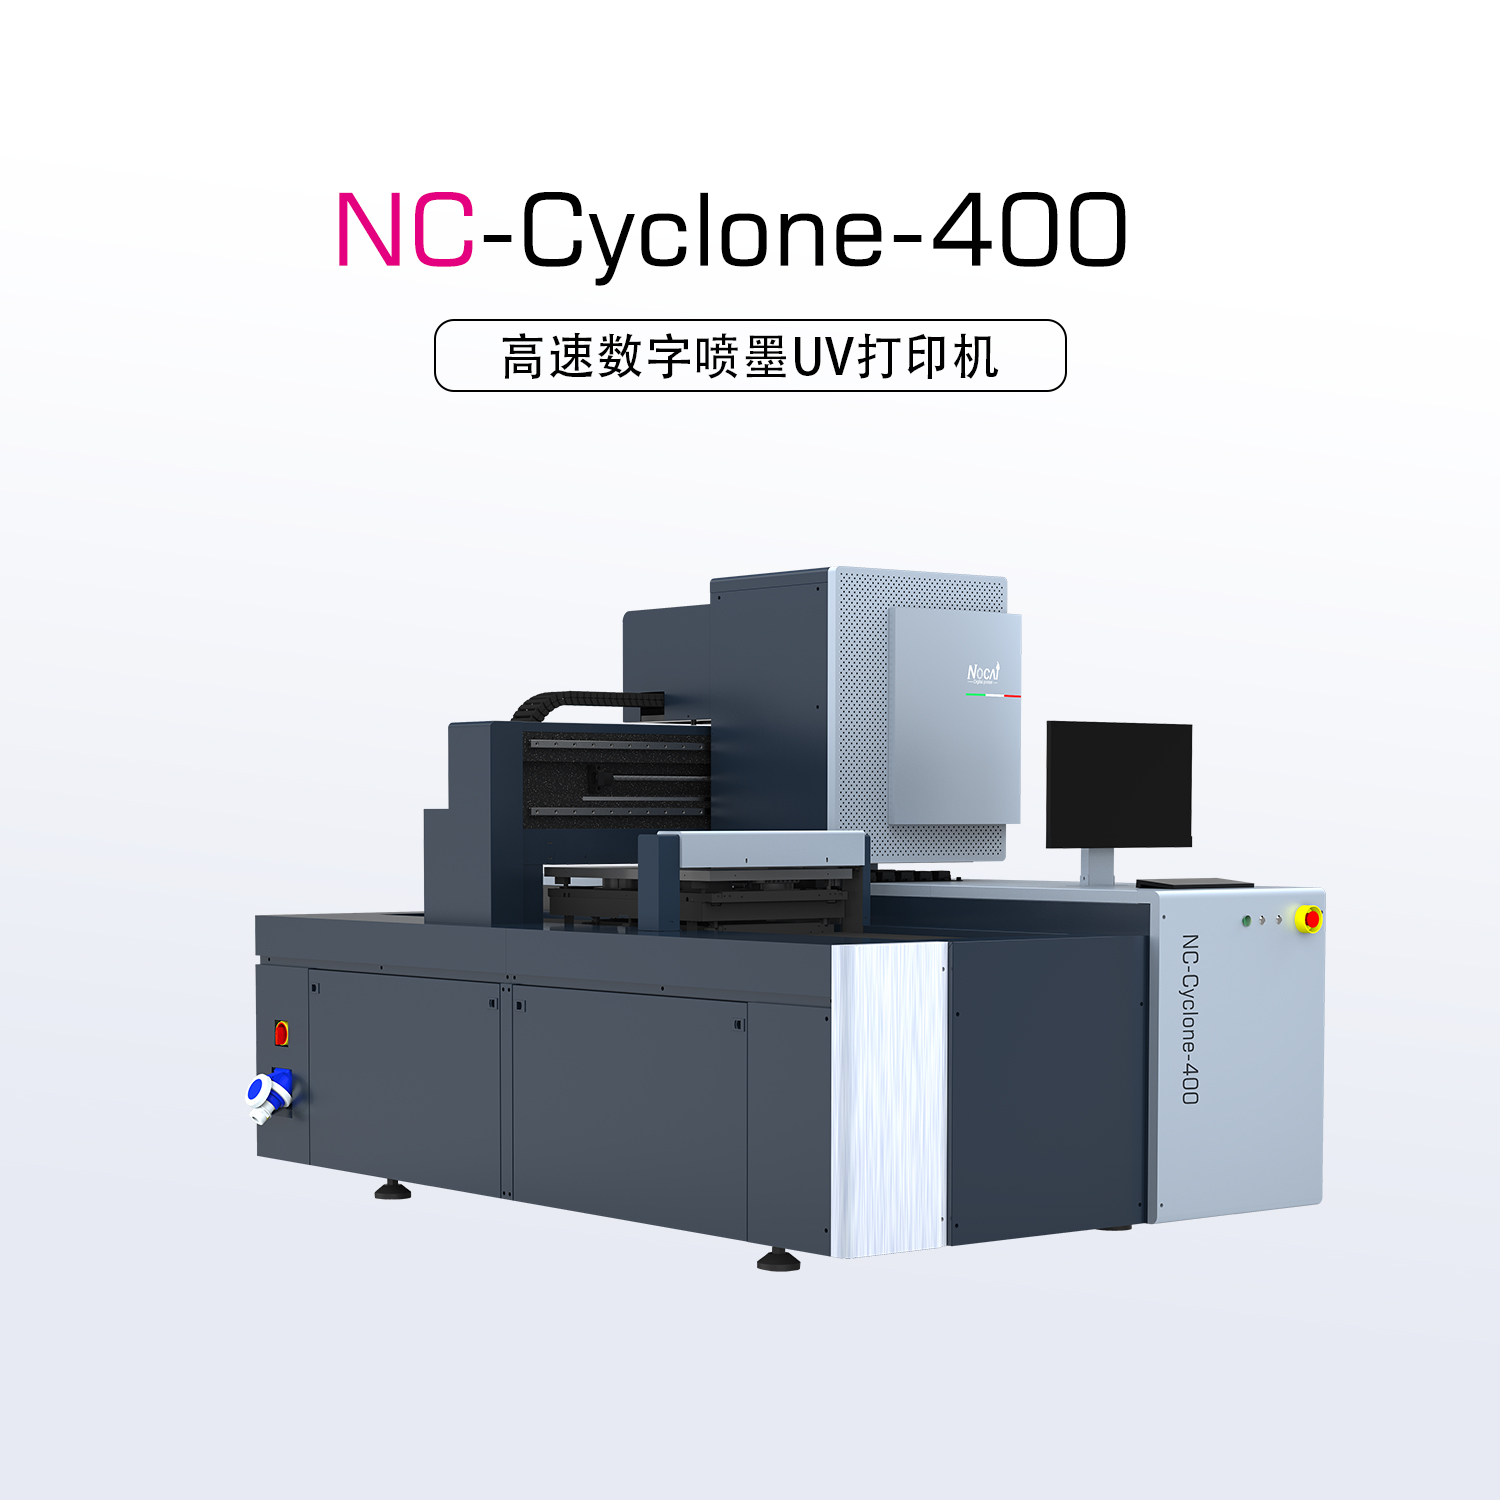 NC-Cyclone-400